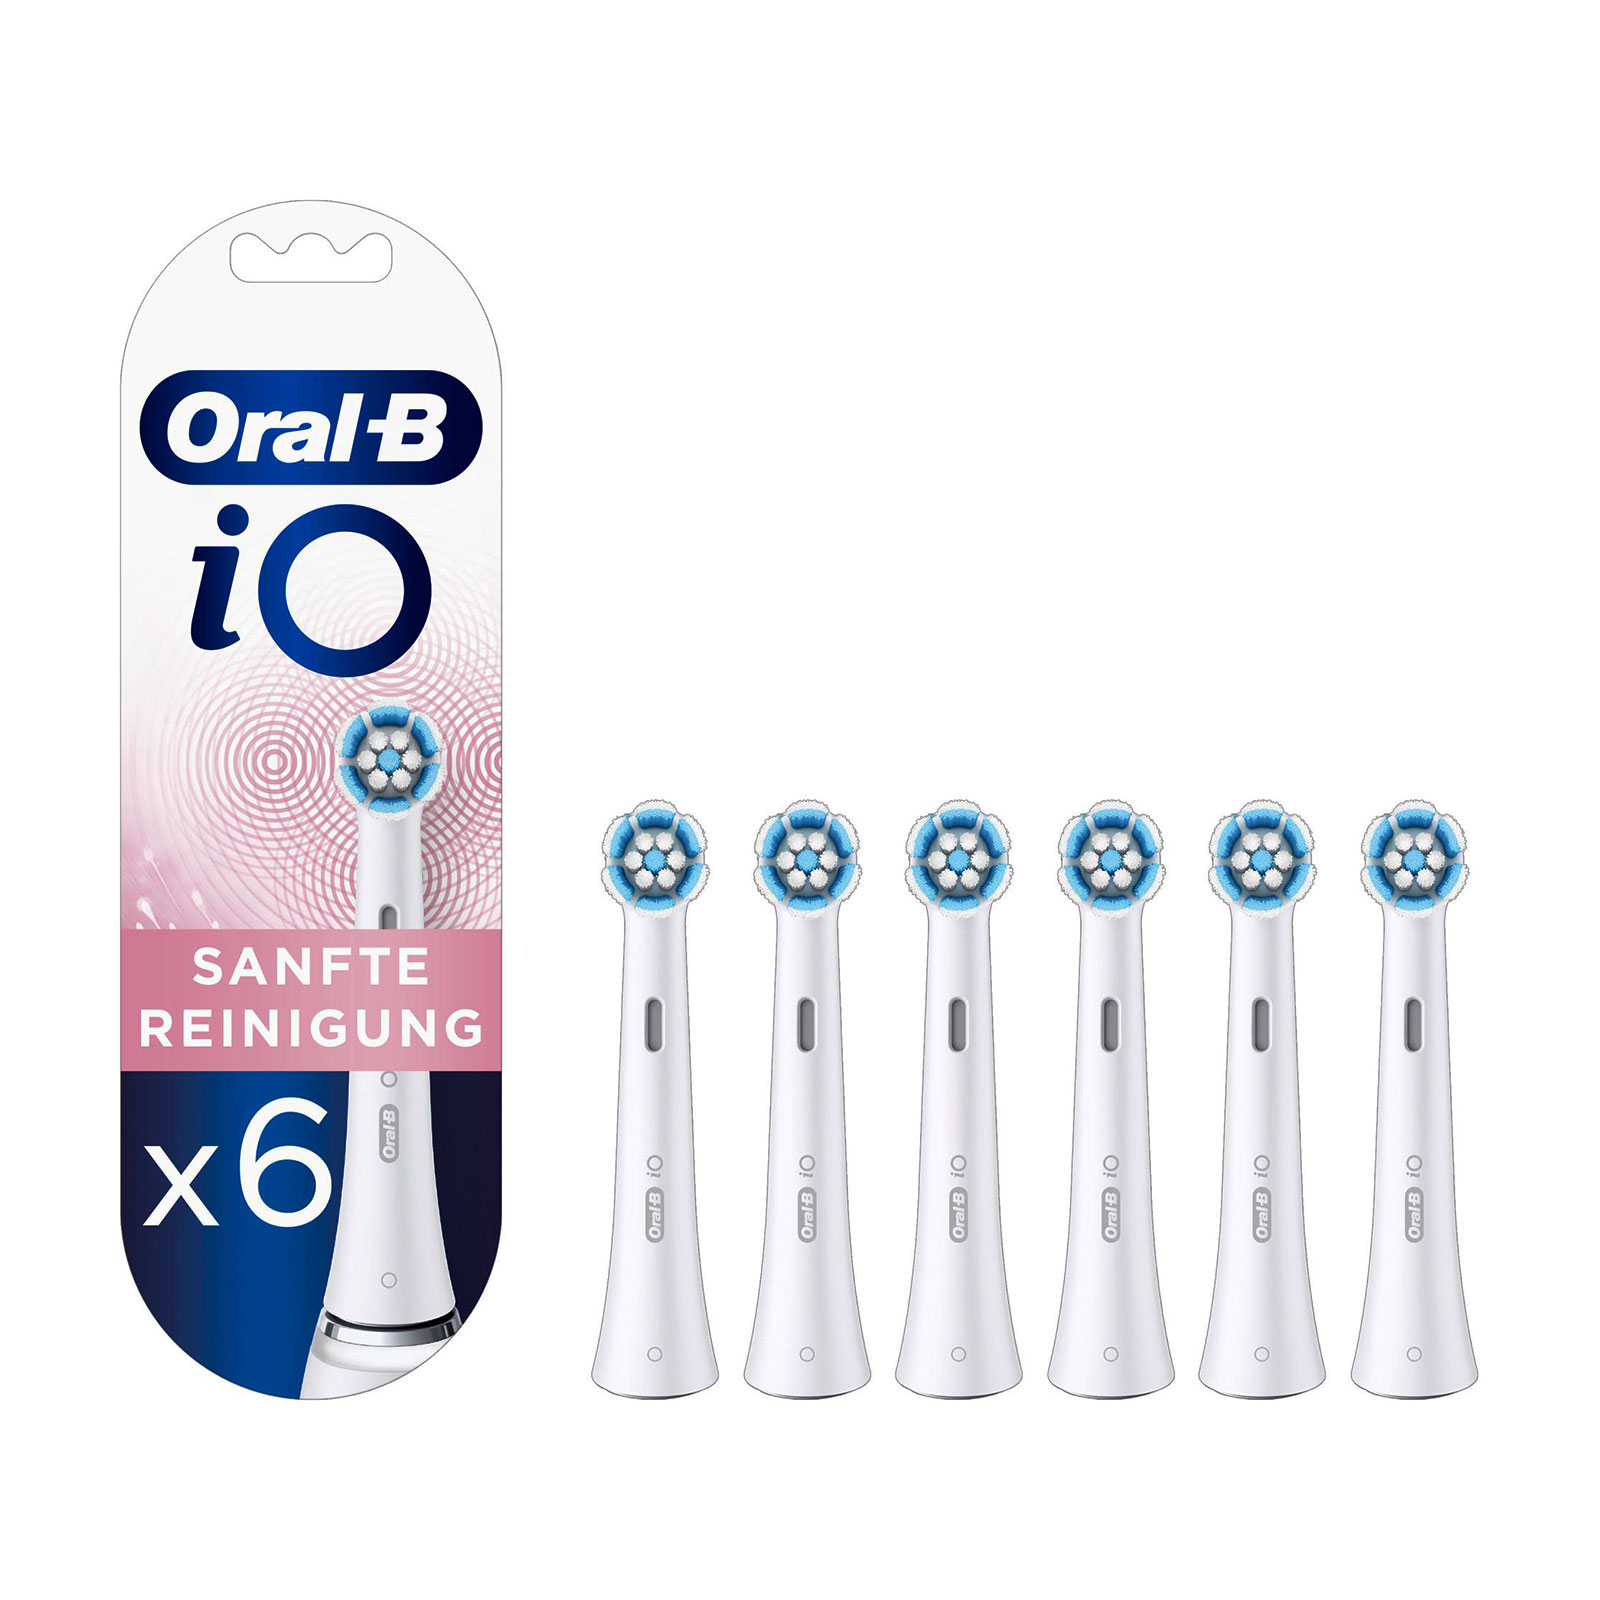 Oral-B iO Sanfte Reinigung, 6 Stück Aufsteckbürsten